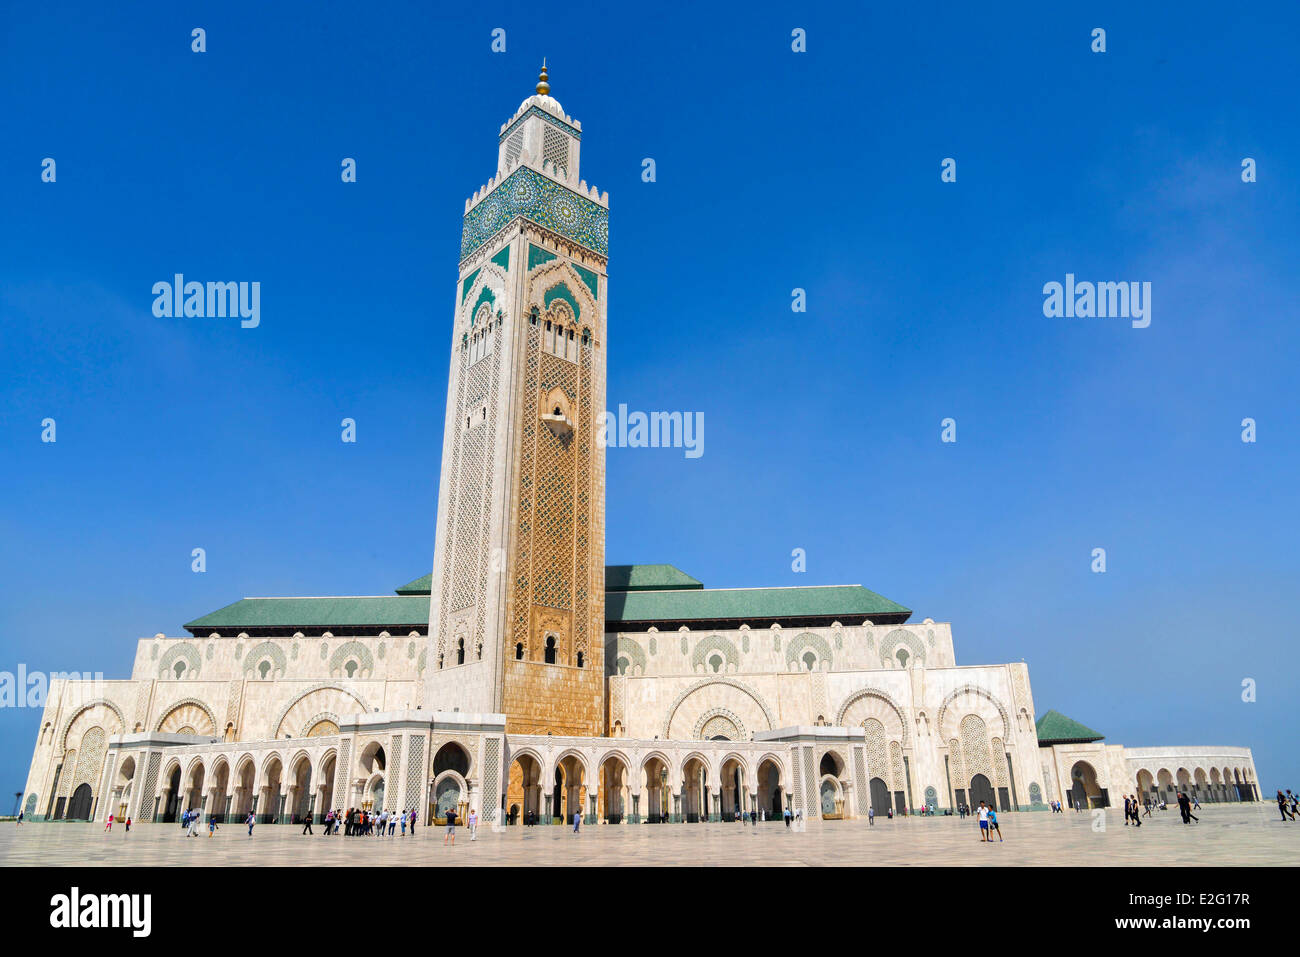 Marocco Casablanca Grande Moschea Hassan II di musulmani in stile arabo costruito dall'architetto Michel Pinseau nel 1986 che possiede il Foto Stock